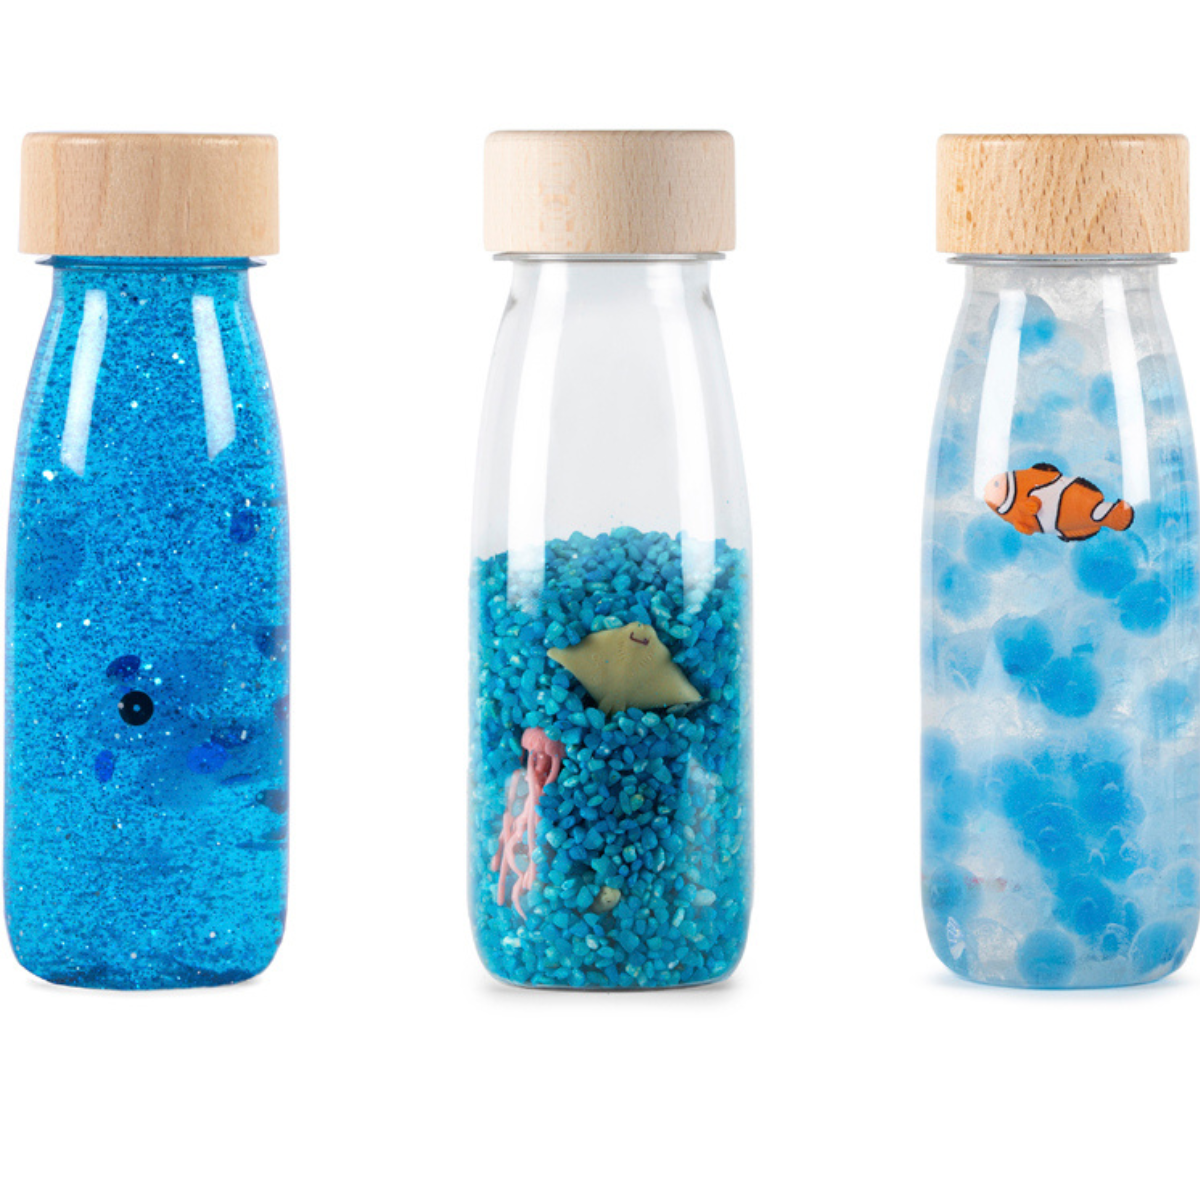 PETIT BOUM – Lot de bouteilles sensorielles thème mer